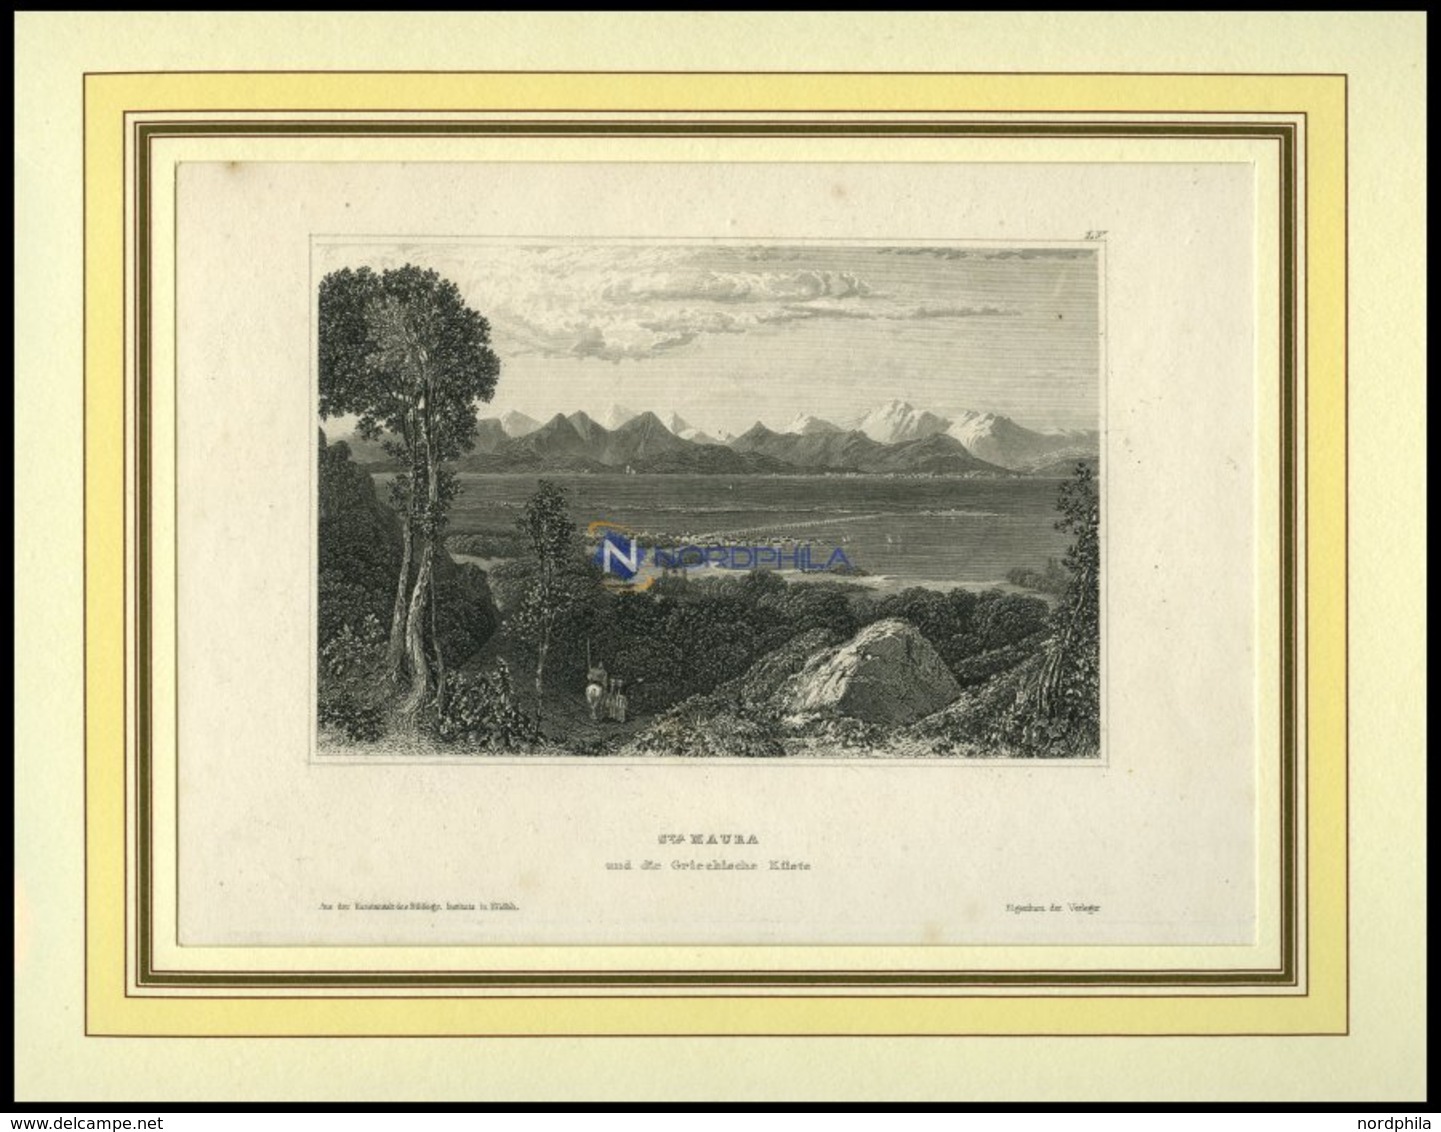 ST.MAURA Und Die Griechische Küste, Stahlstich Von B.I. Um 1840 - Litografía